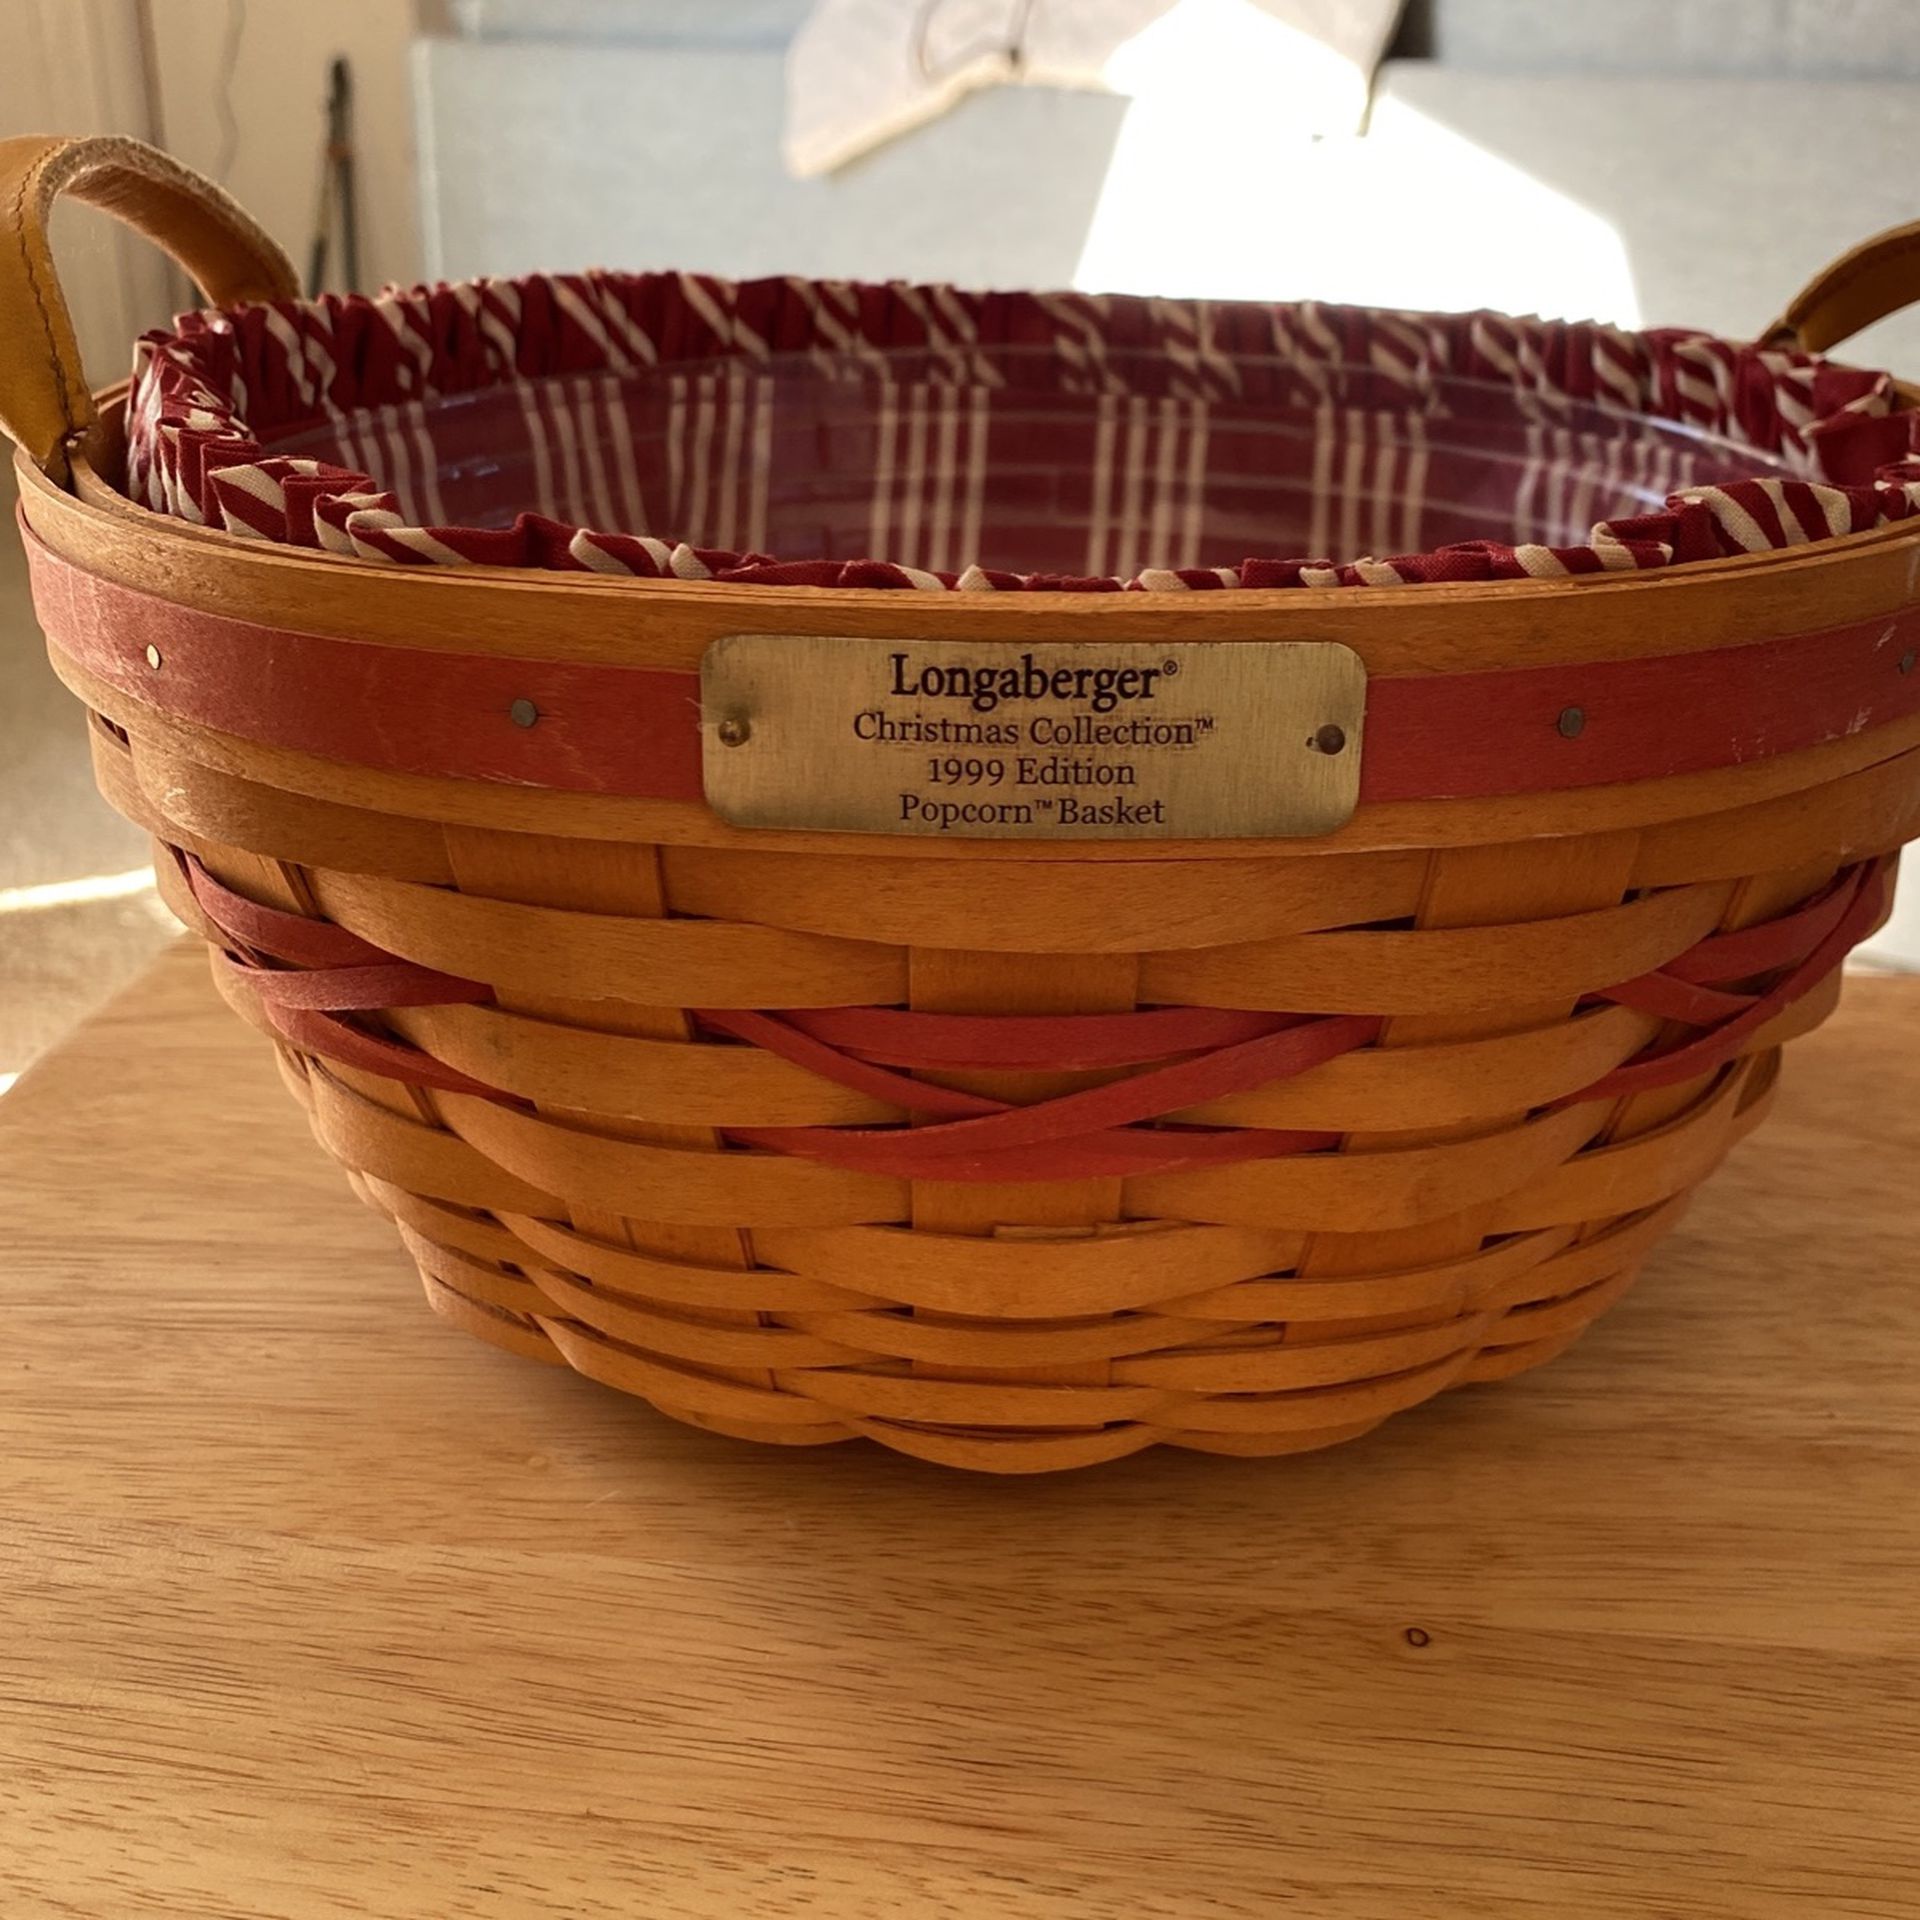 Longaberger Basket , 1999 Edition “popcorn Basket